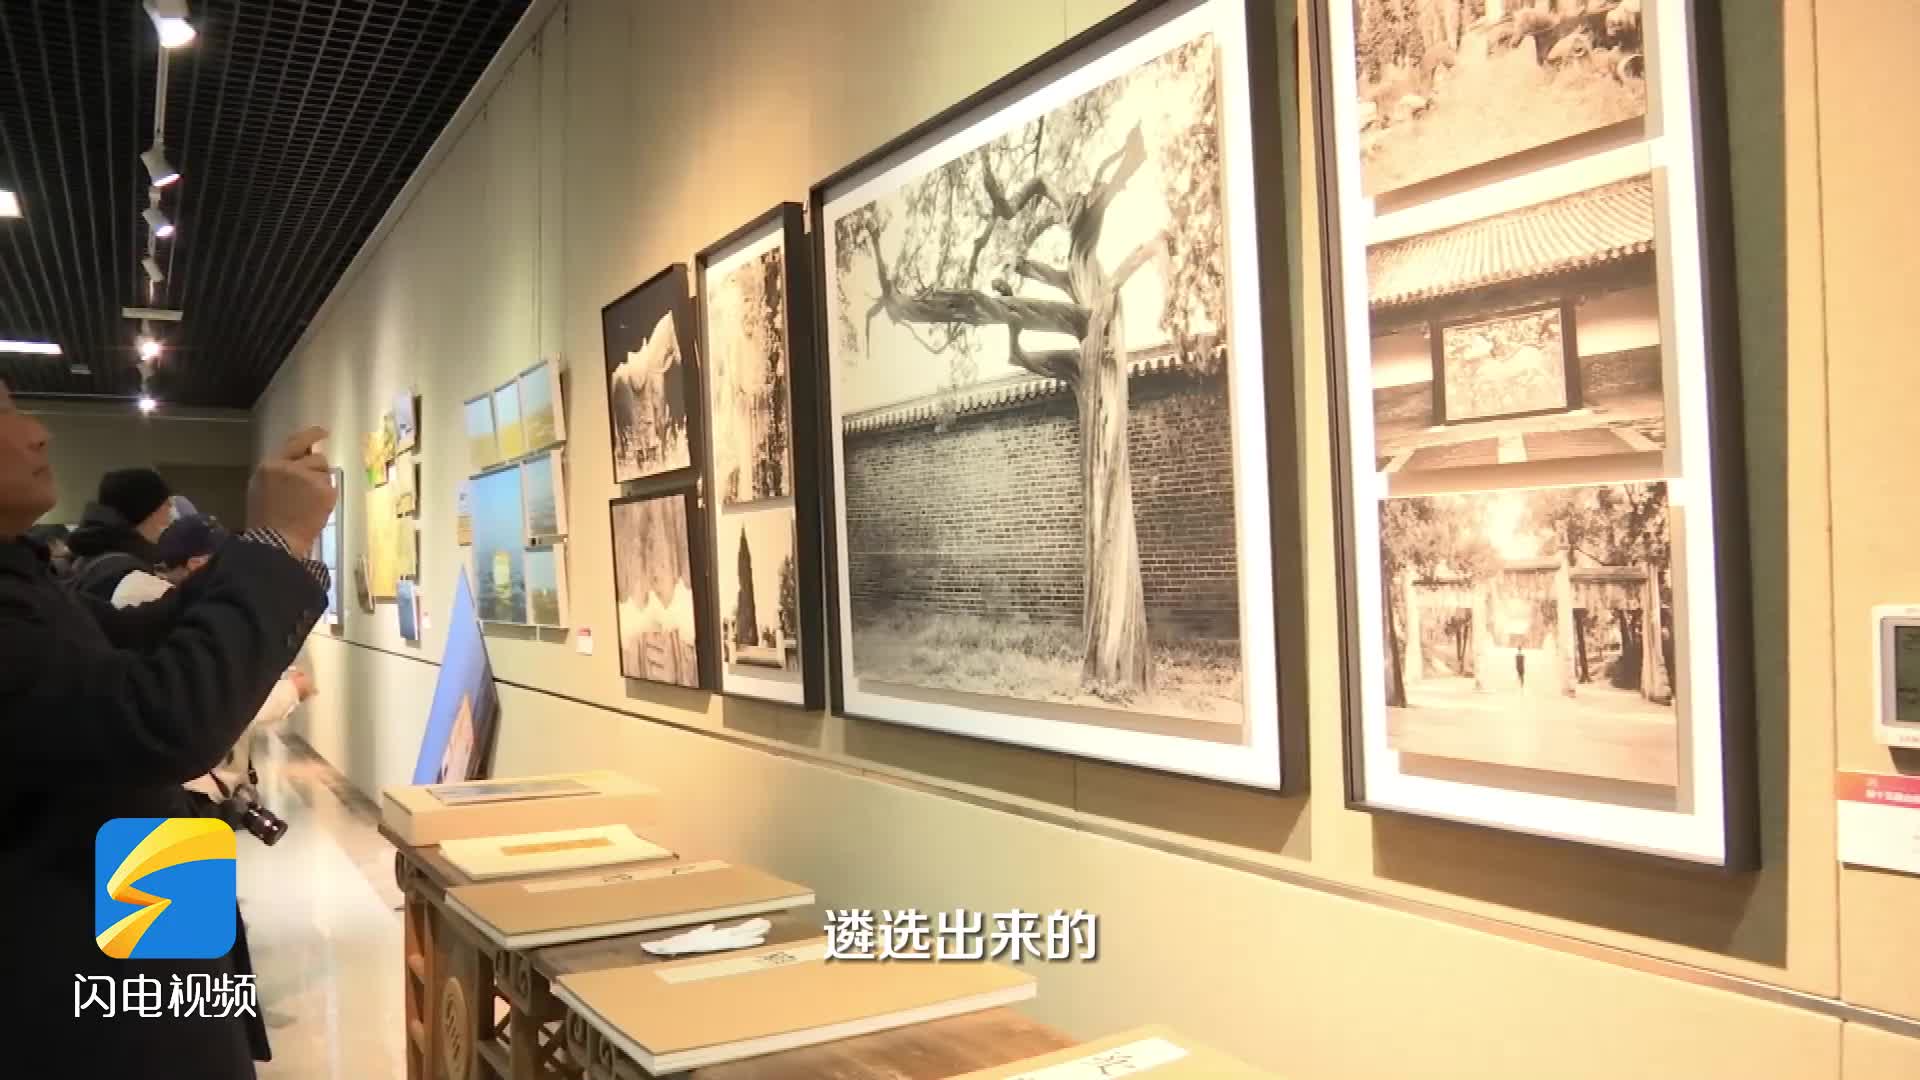 “长枪短炮”里的齐鲁变迁 第十五届山东省摄影艺术展在济南开幕